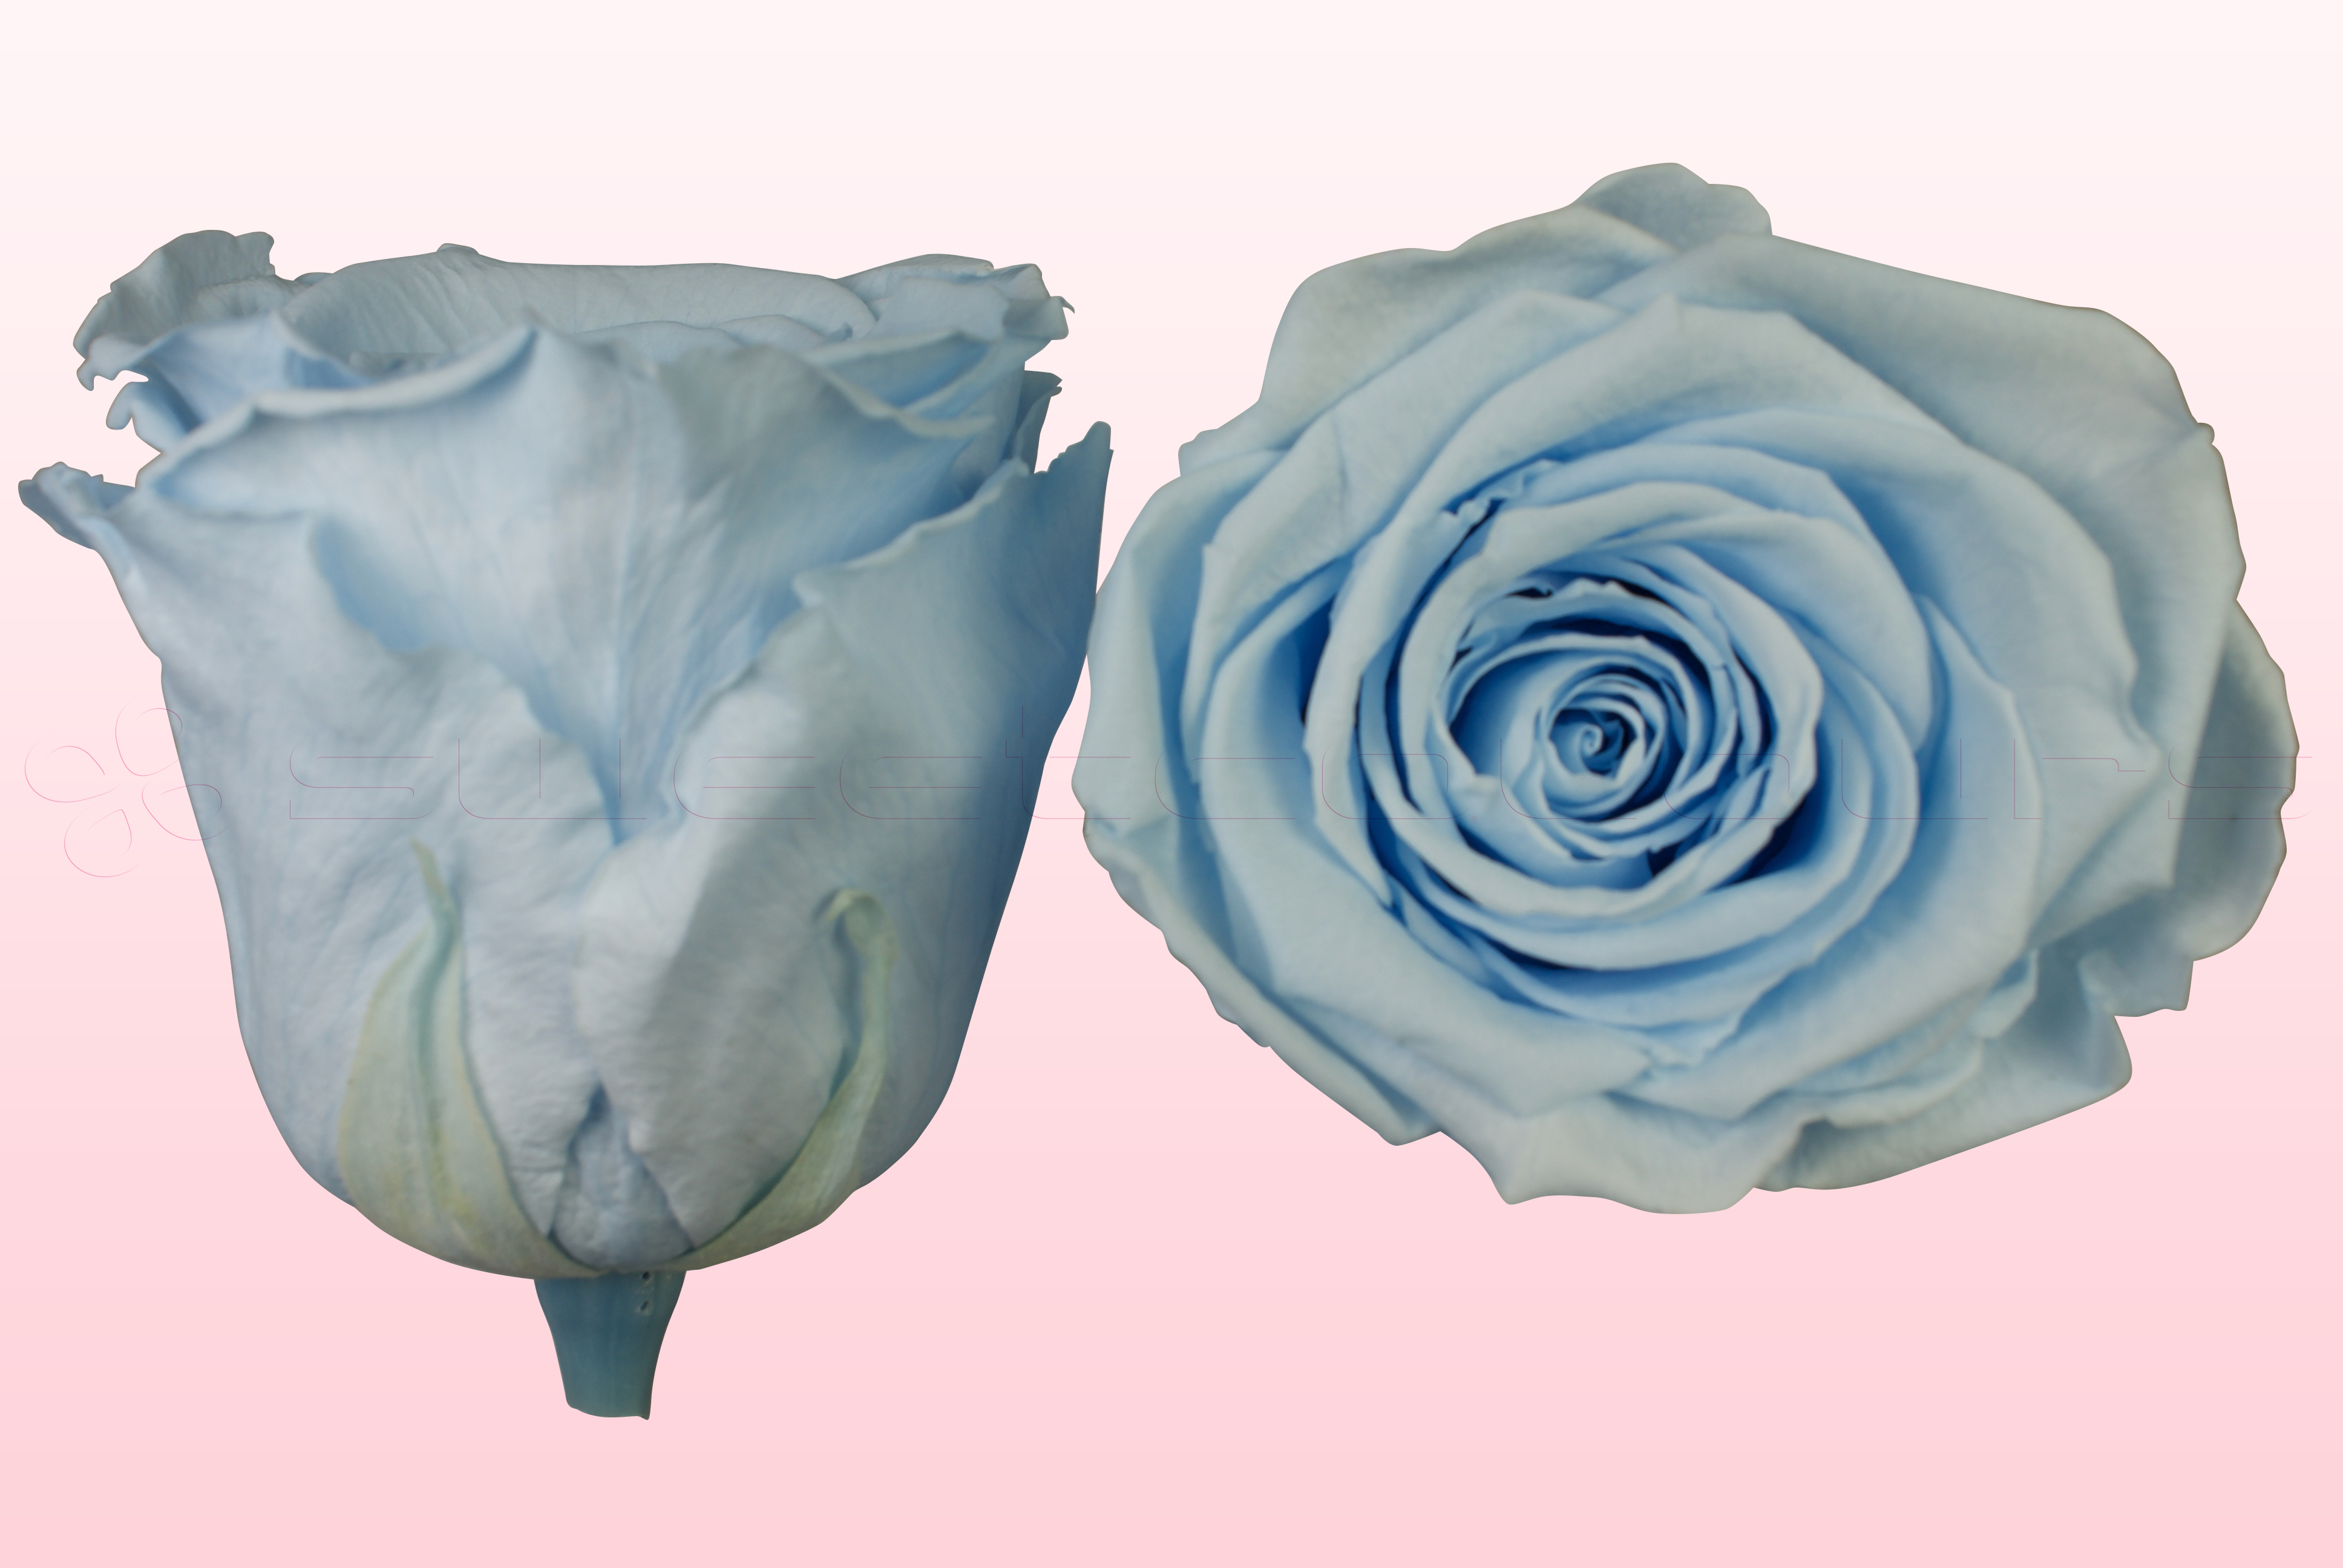 Preserved roses Light blue